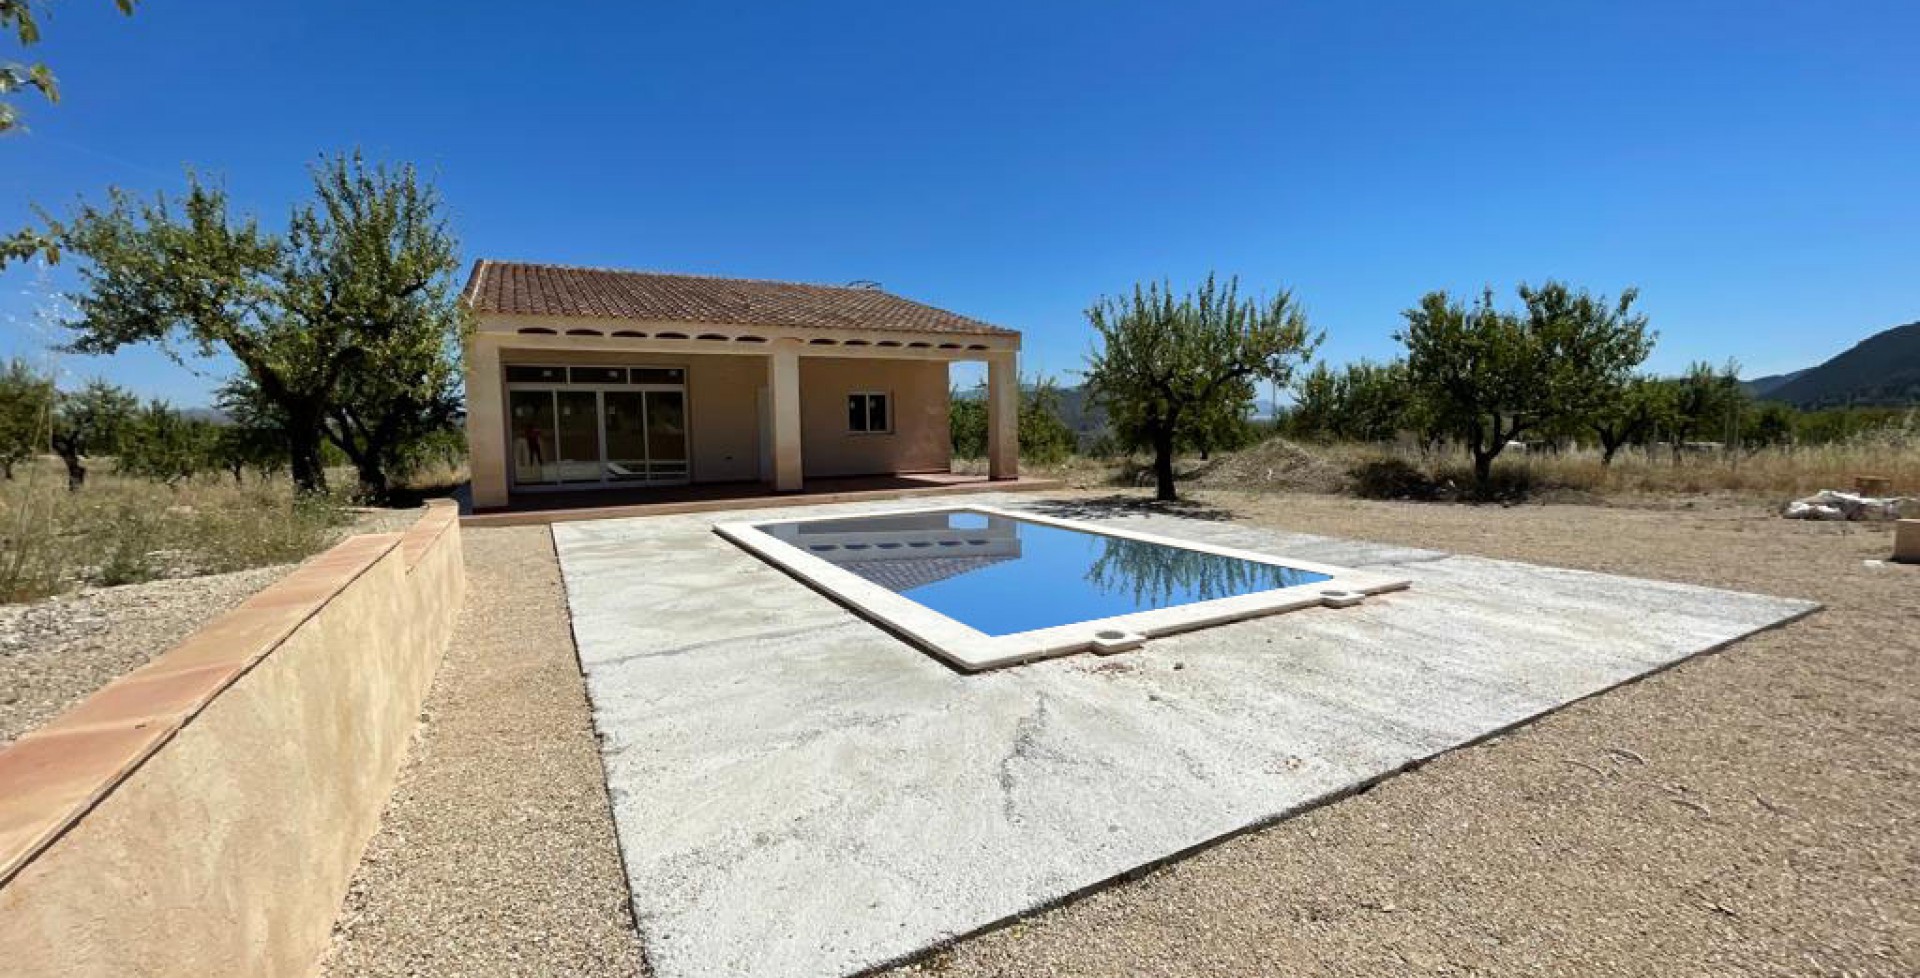 Construcción de Chalet nuevo con amplia piscina, Ricote, Murcia, Spain